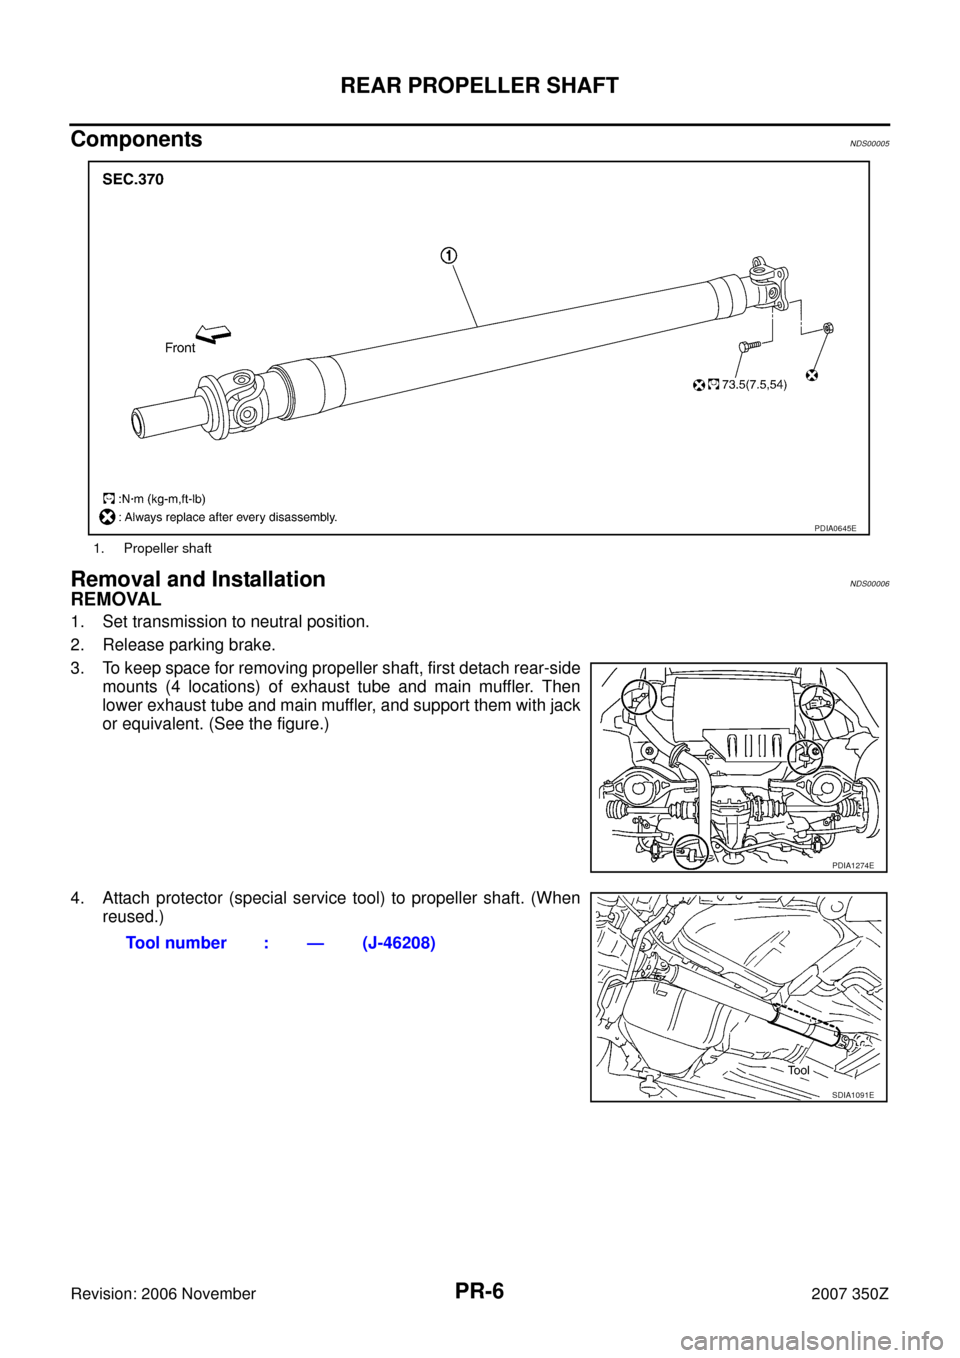 NISSAN 350Z 2007 Z33 Propeller Shaft Workshop Manual PR-6
REAR PROPELLER SHAFT
Revision: 2006 November2007 350Z
ComponentsNDS00005
Removal and InstallationNDS00006
REMOVAL
1. Set transmission to neutral position.
2. Release parking brake.
3. To keep spa